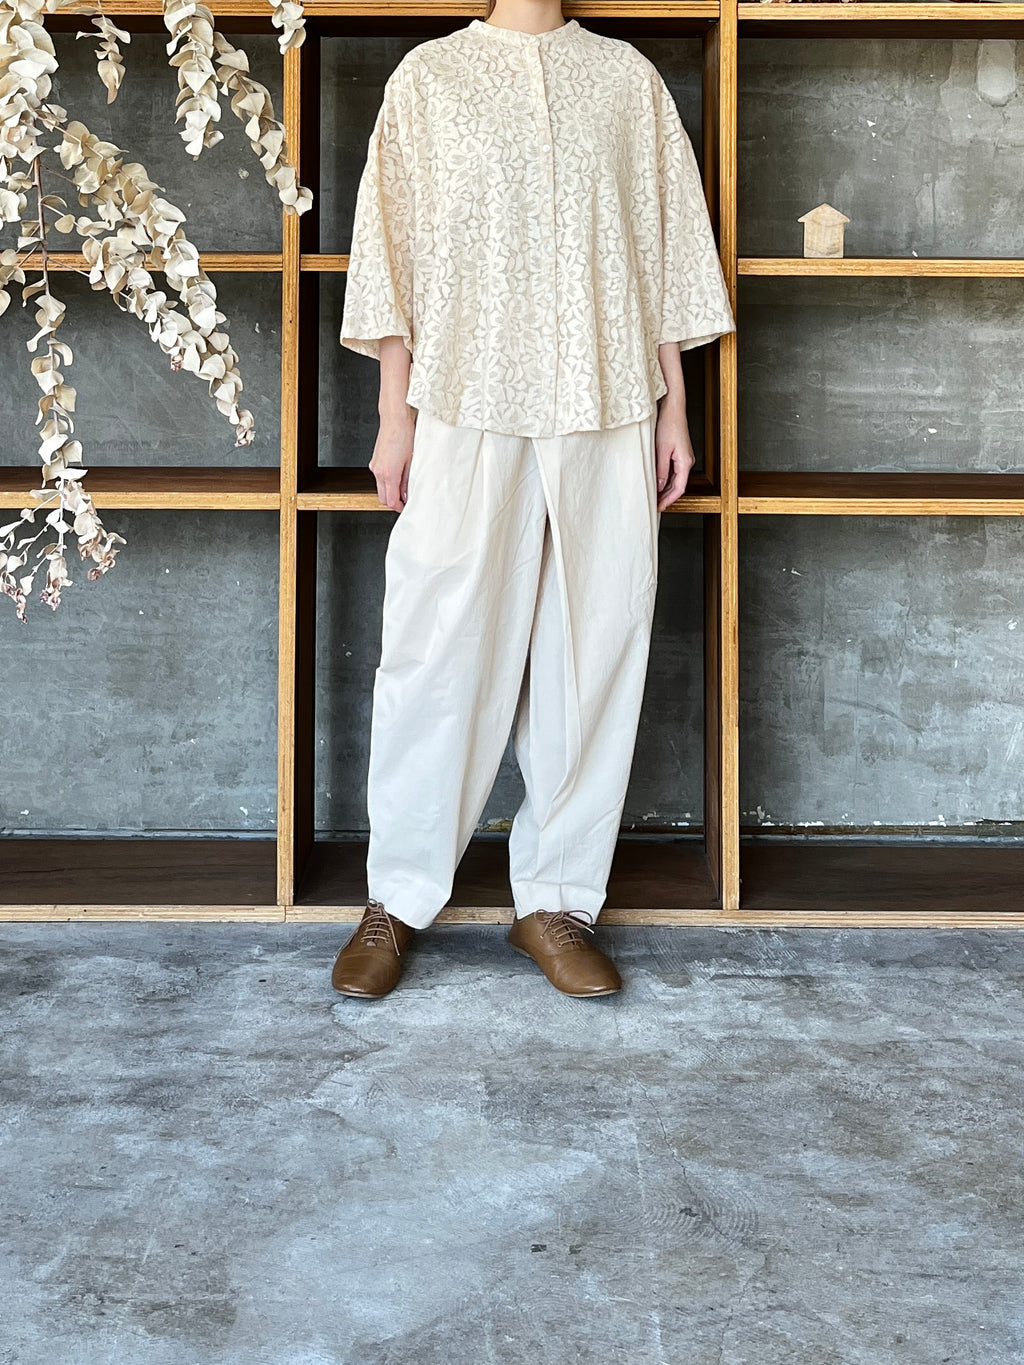 IKKUNA / shawl-sleeve lace blouse